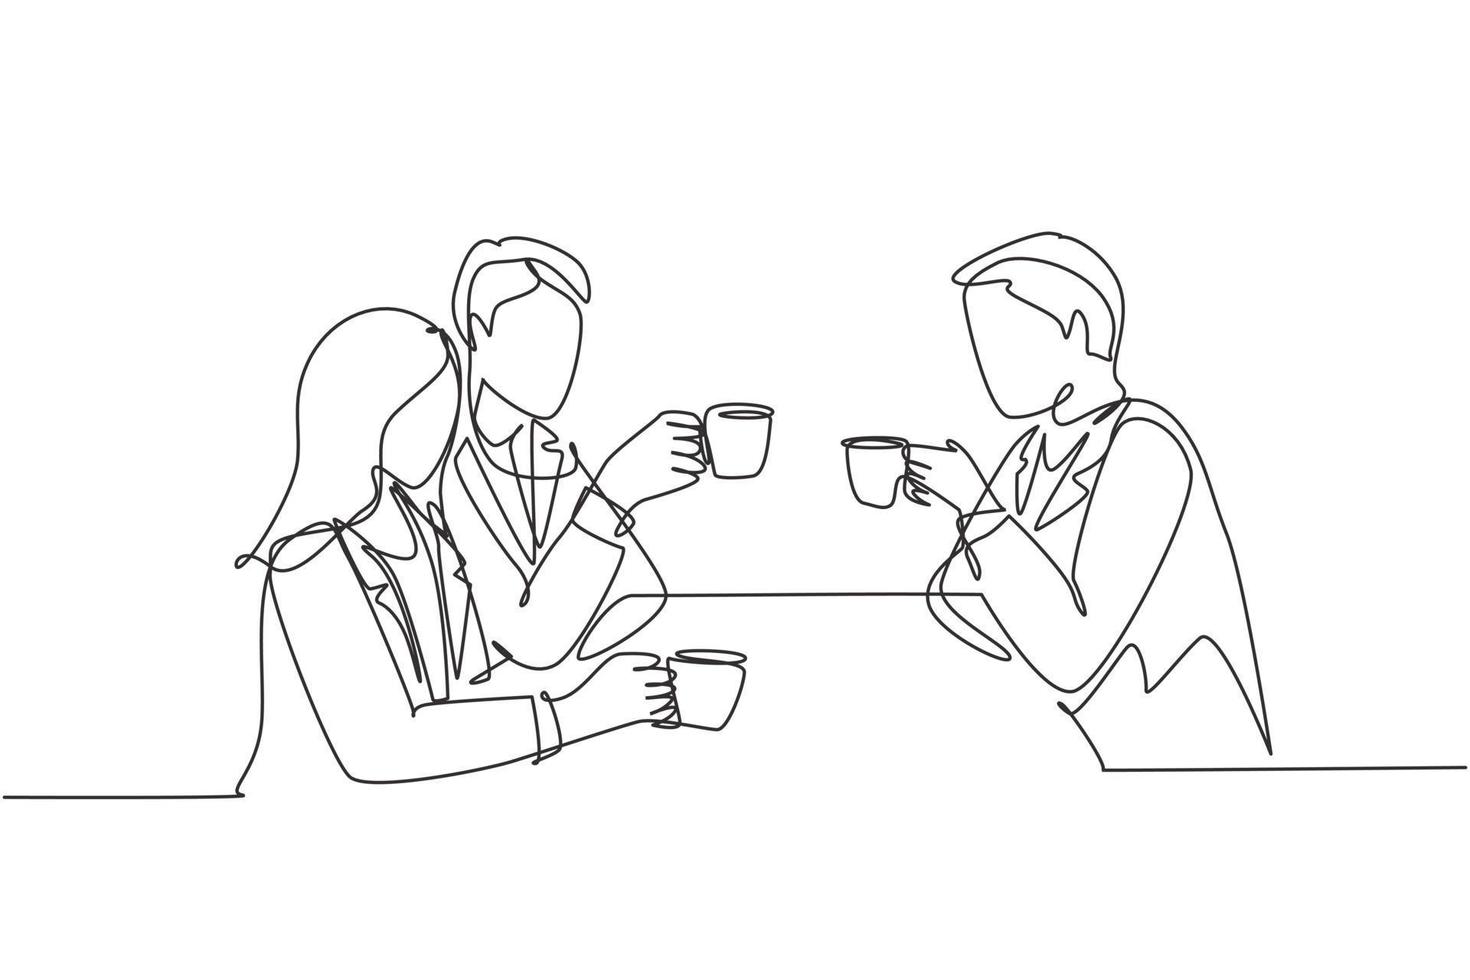 en kontinuerlig linjeteckning av ung affärsman och affärskvinna som gör affärsmöte på restaurang medan han håller en kopp kaffe. affärssamtal koncept. enkel linje rita design illustration vektor